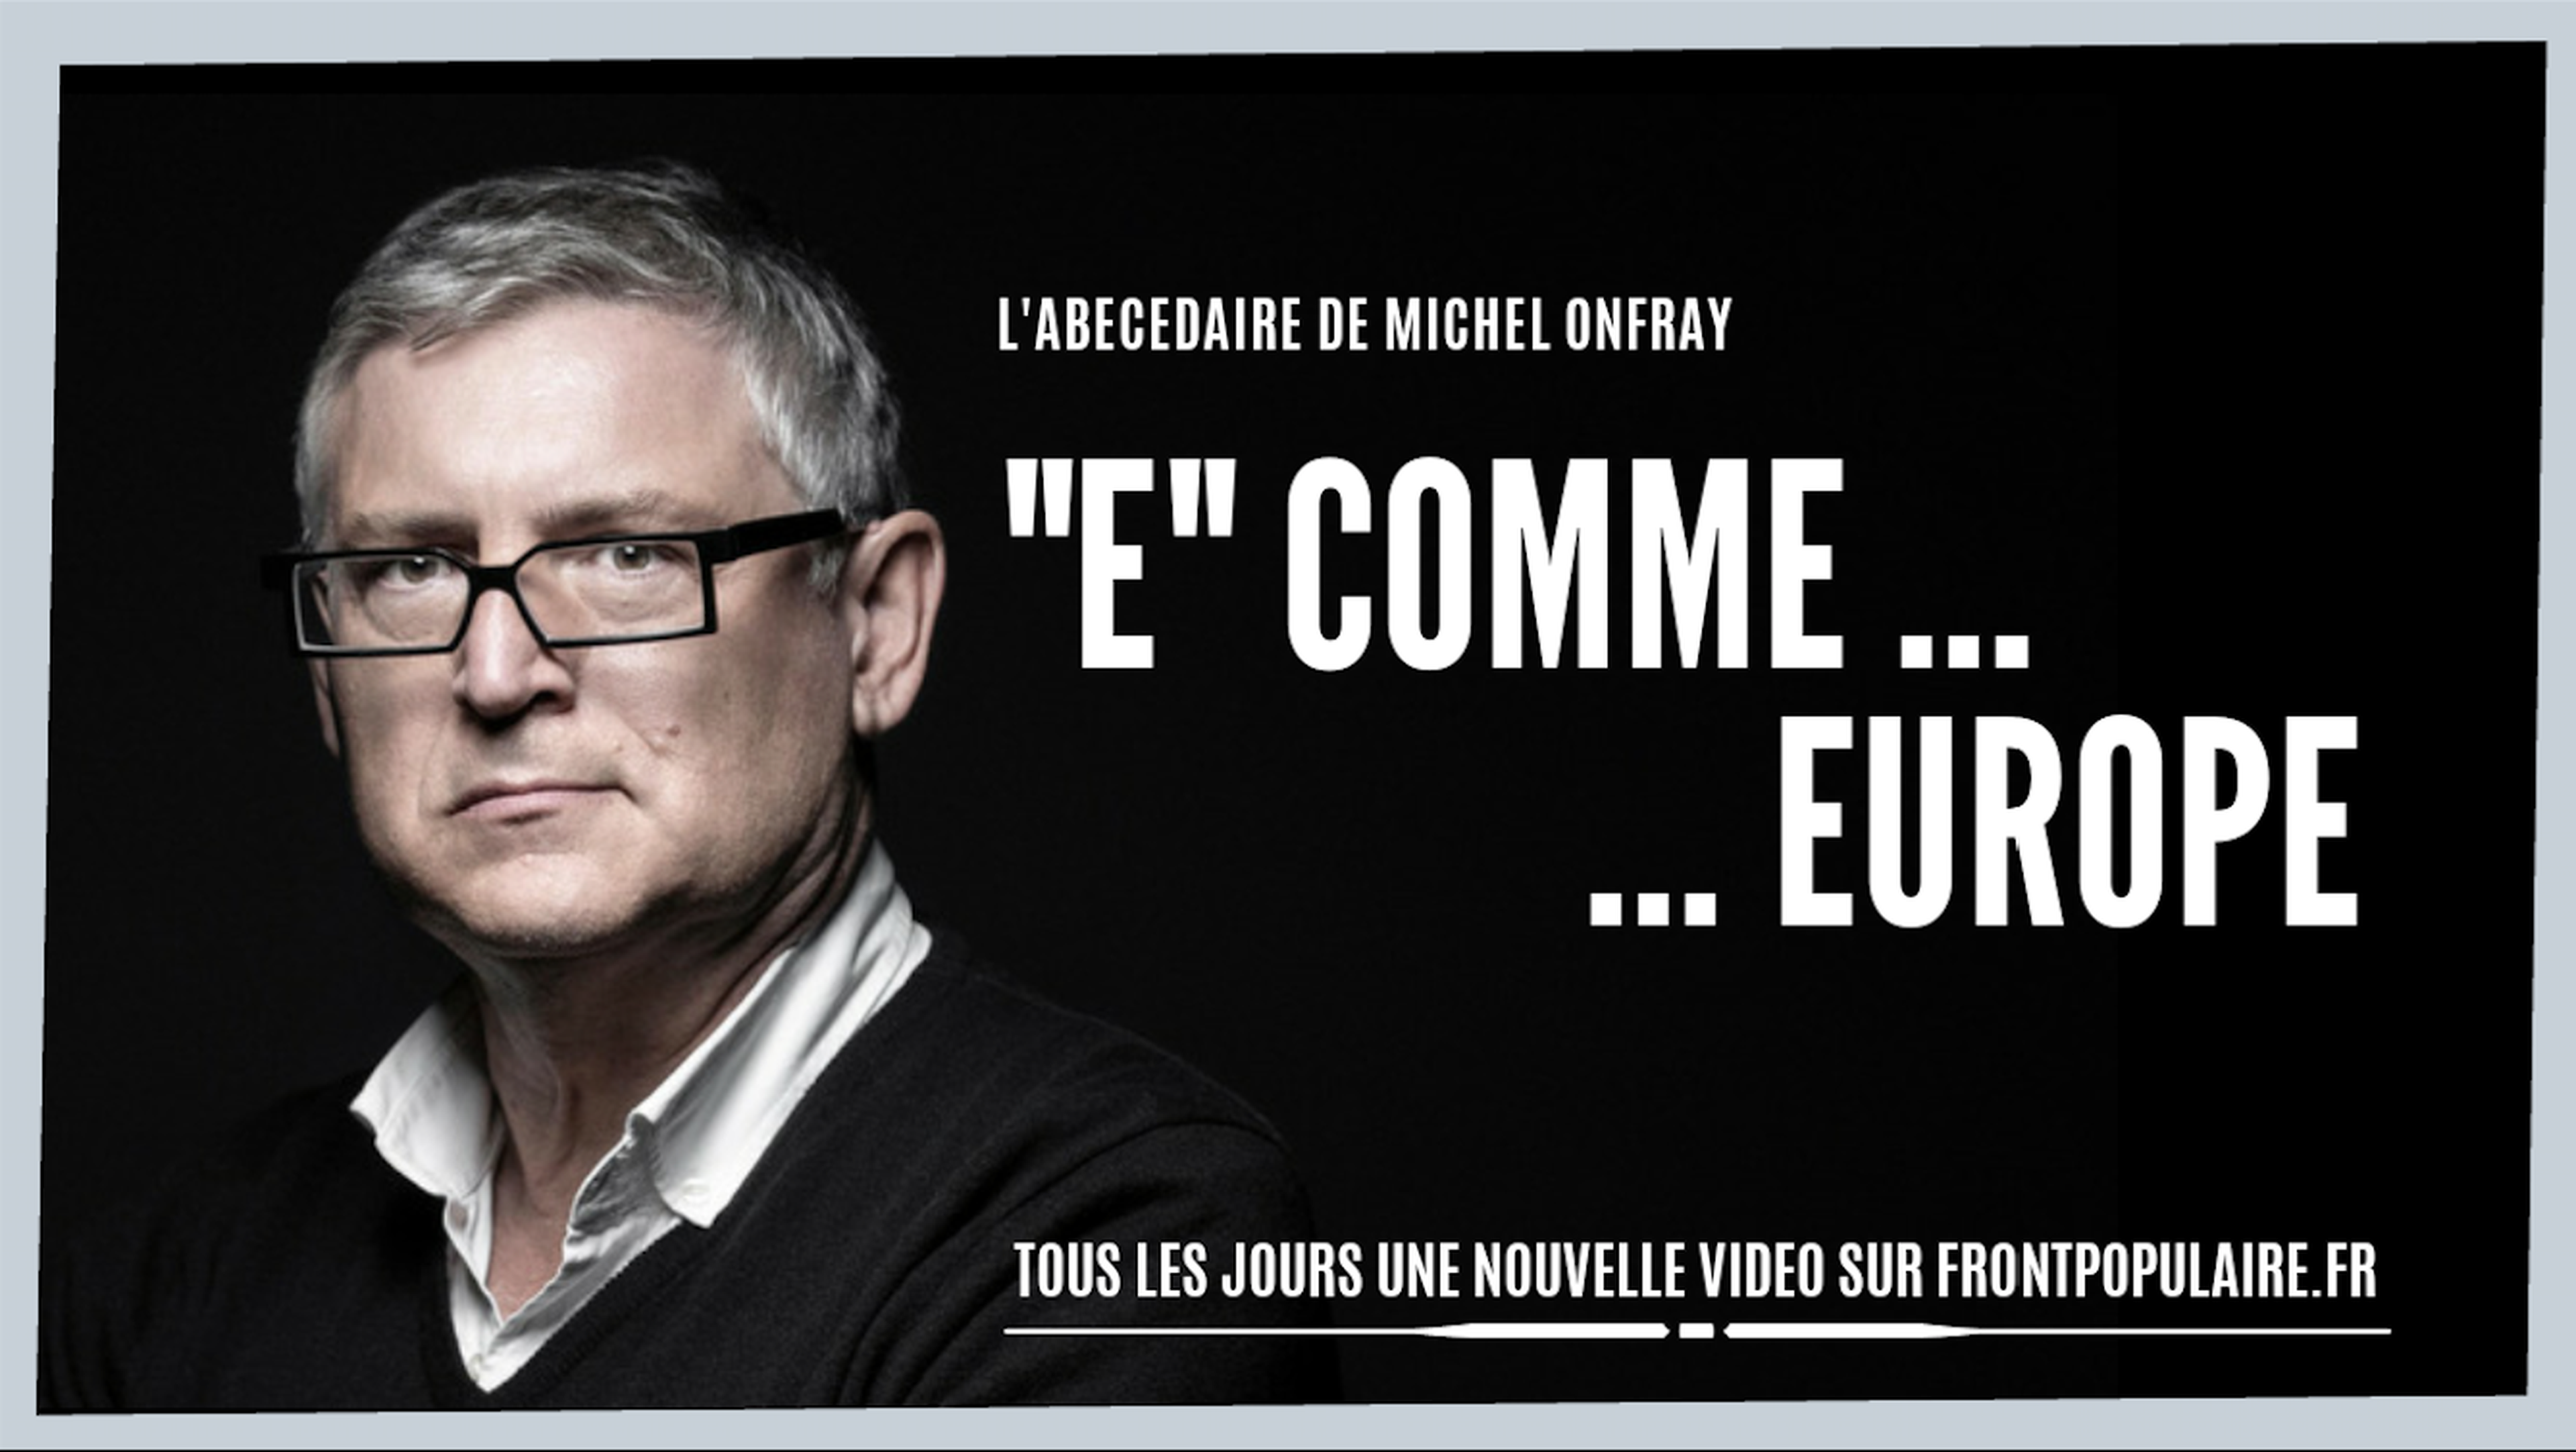 L’abécédaire de Michel Onfray: E comme Europe